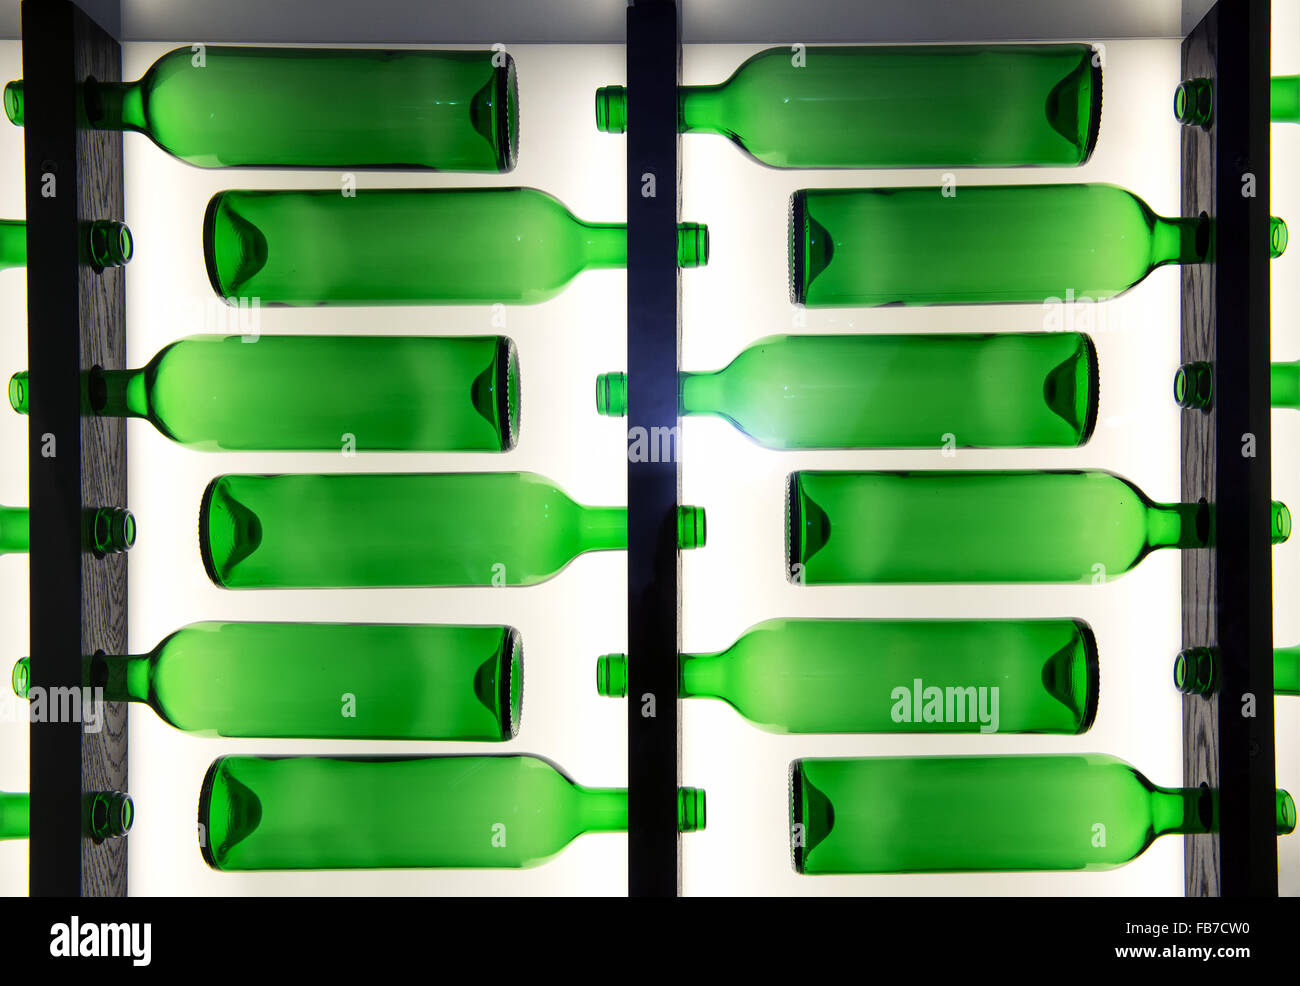 Dekorative Muster der grüne Glasflaschen angeordnet in Reihen gegenüber in wechselnden Richtungen mit Hintergrundbeleuchtung Stockfoto